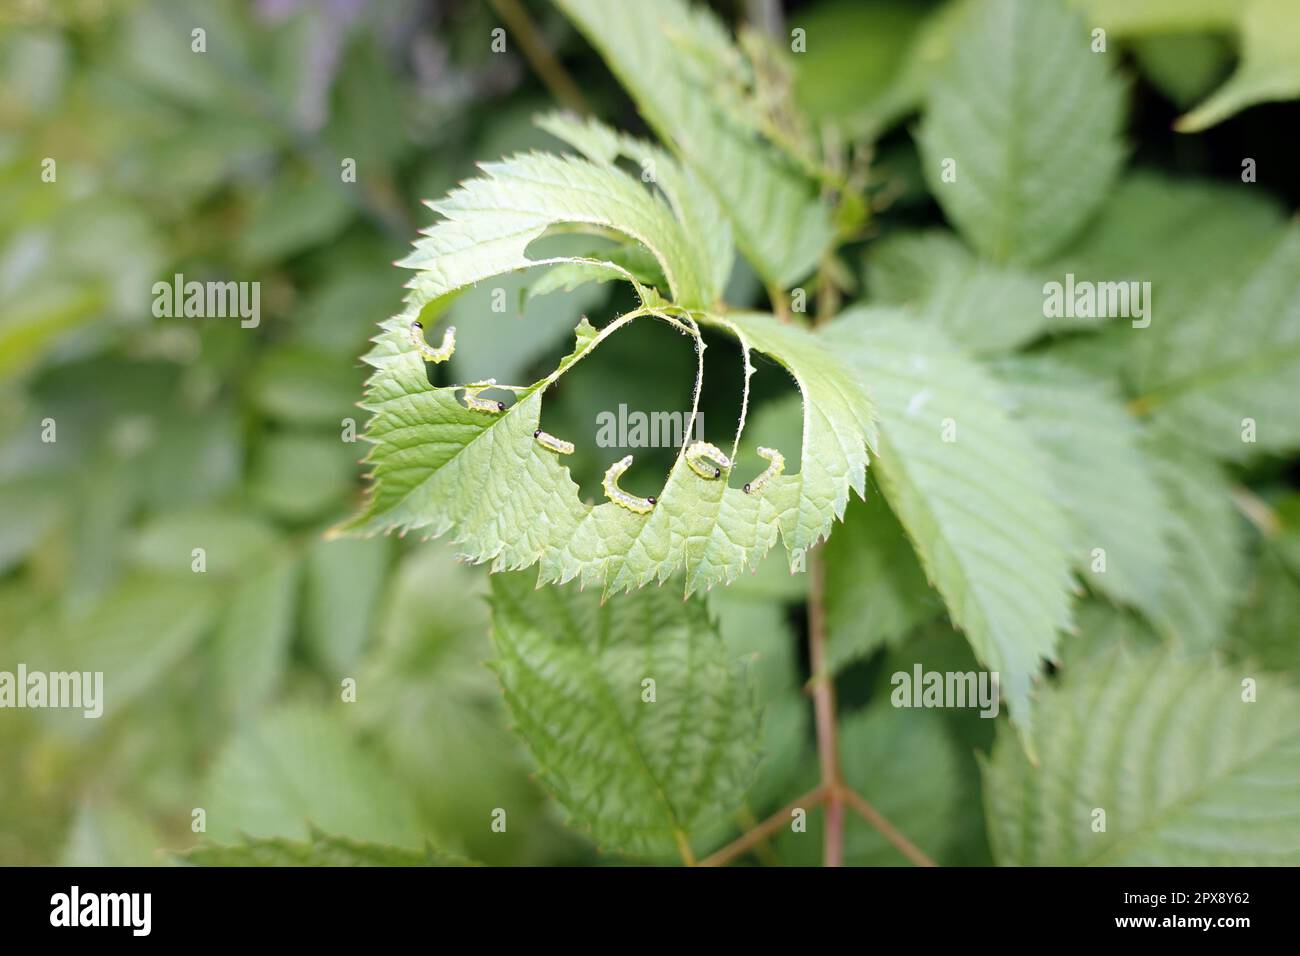 Blattwespen-Larven (Tenthredinidae) fressen die Blätter eines Wald-Geissbart (Aruncus dioicus) Stock Photo